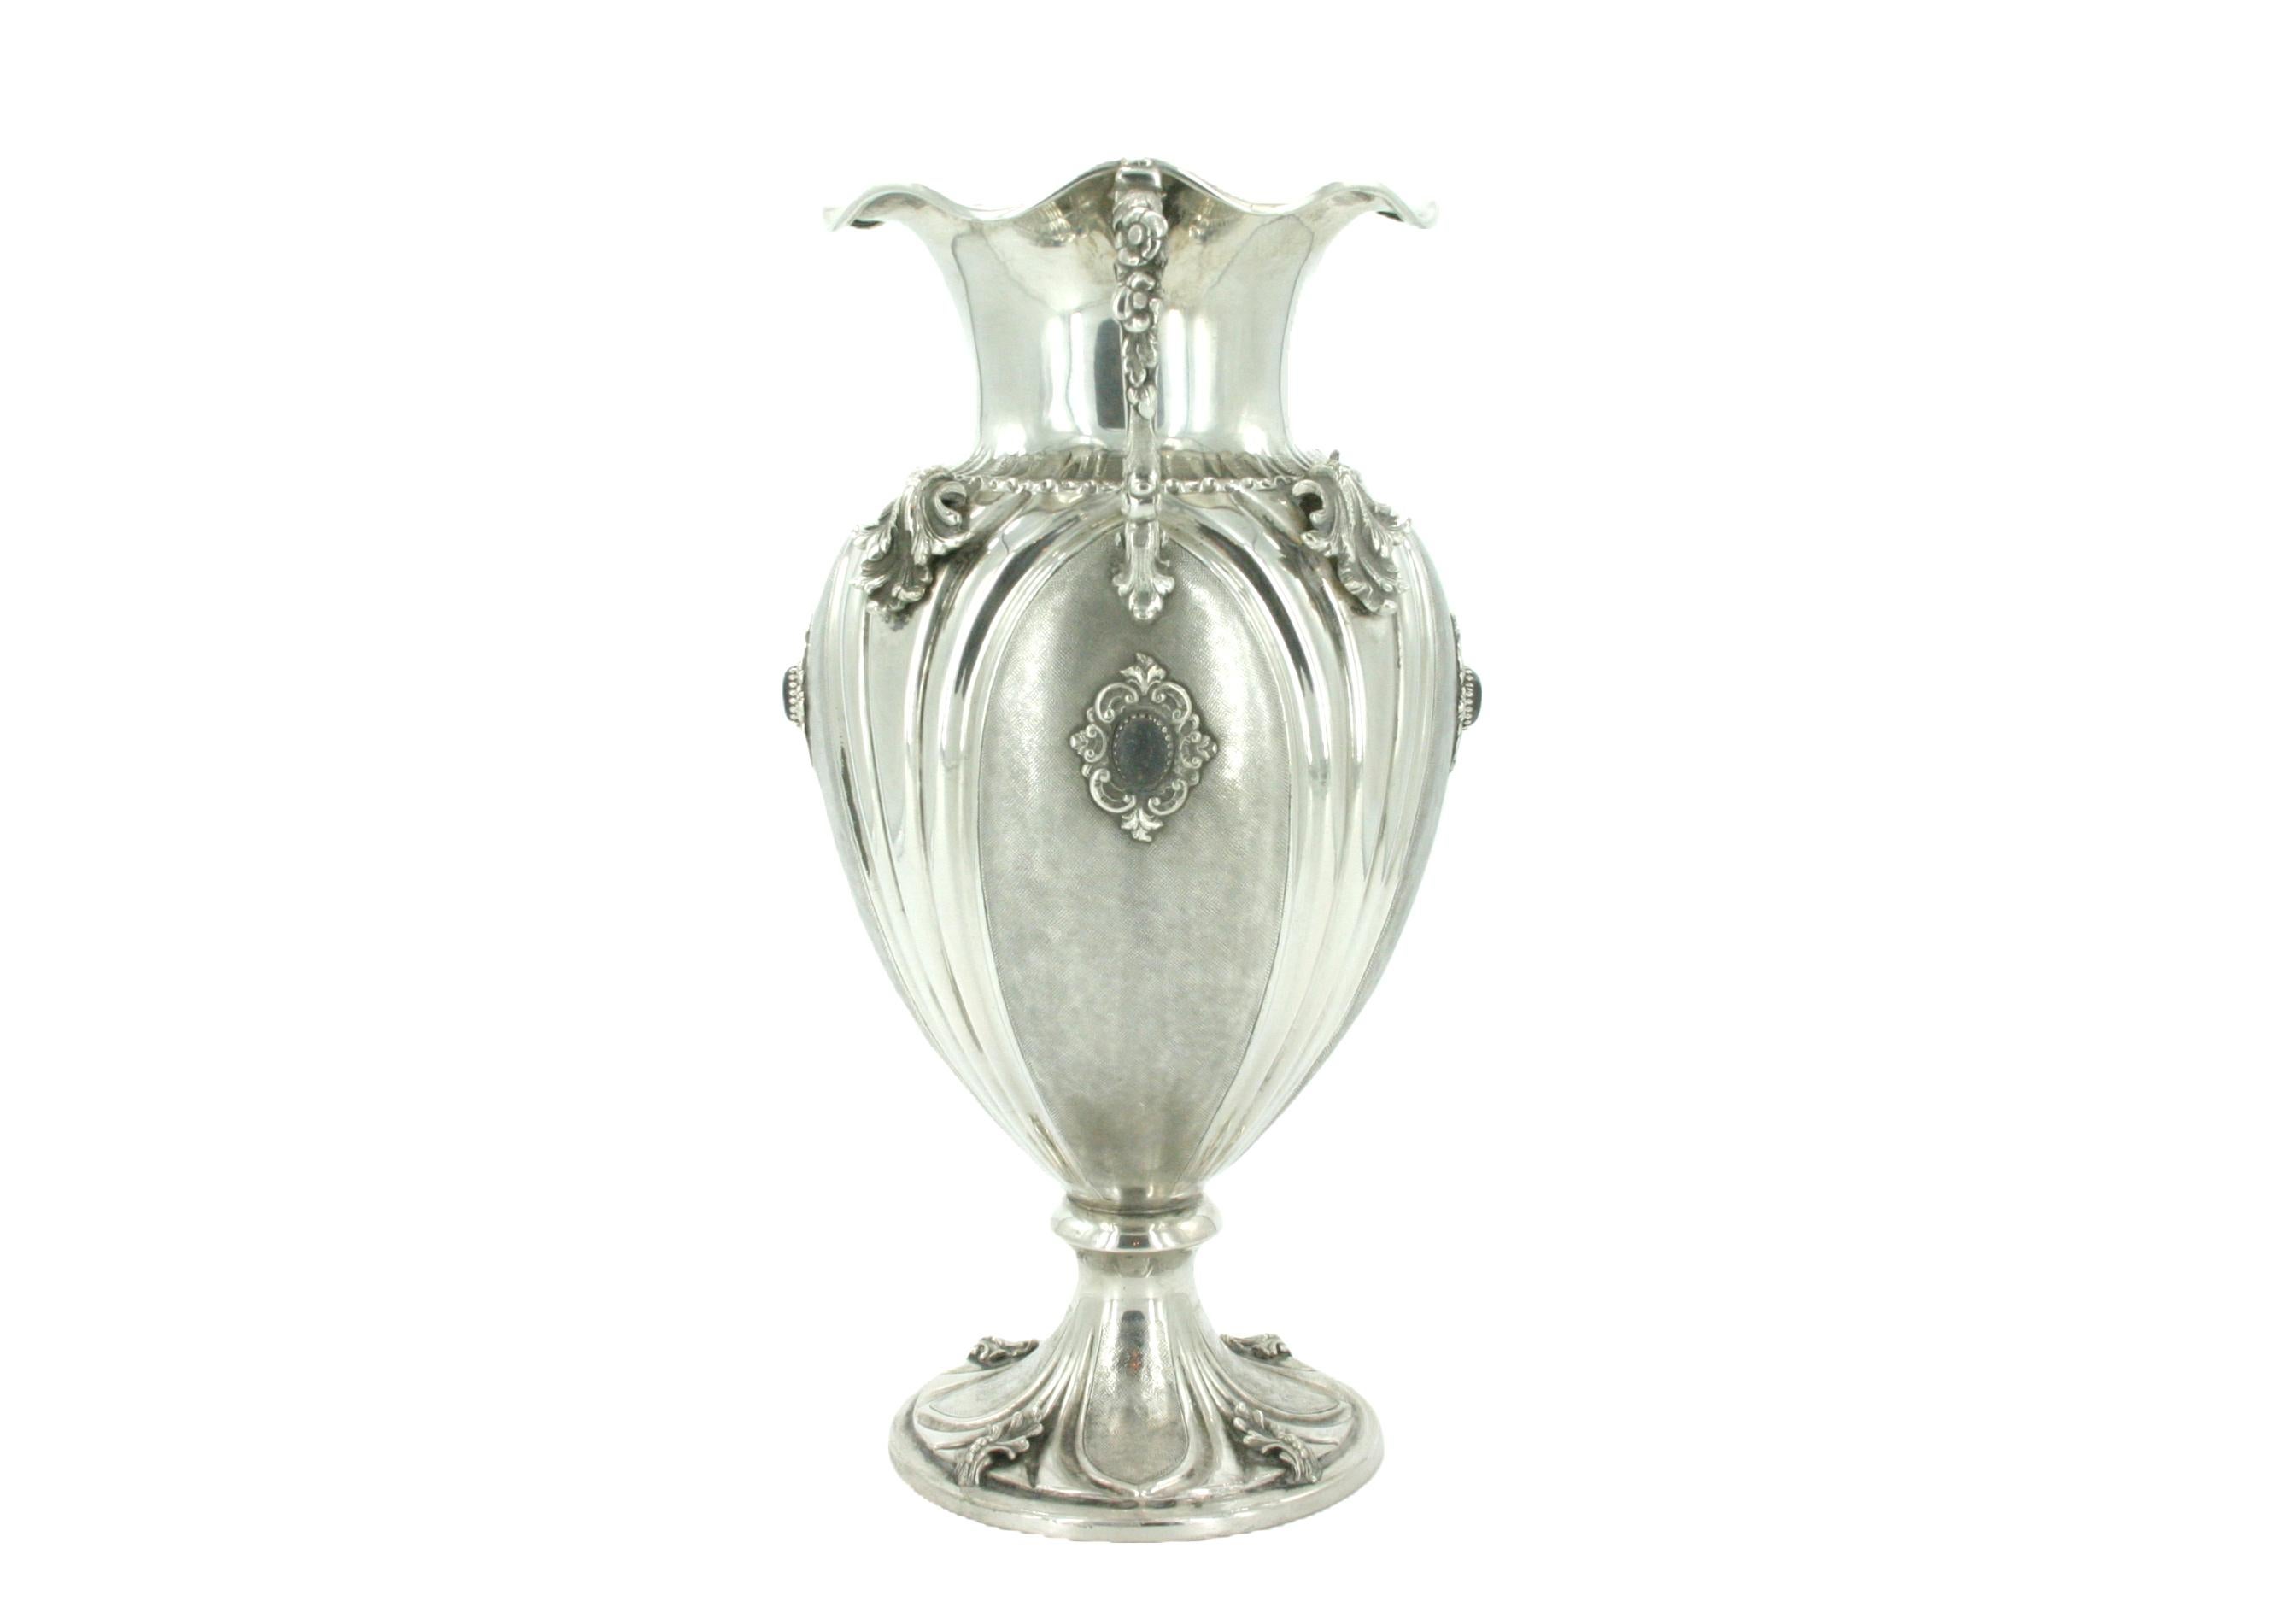 Italienische Ziervase aus Sterlingsilber des 19. Jahrhunderts mit zwei seitlichen Henkeln und äußeren Gestaltungsdetails. Die Vase hat einen fein ziselierten Körper mit applizierten Blattmotiven und Halbedelsteinen. Die Vase ist in sehr gutem